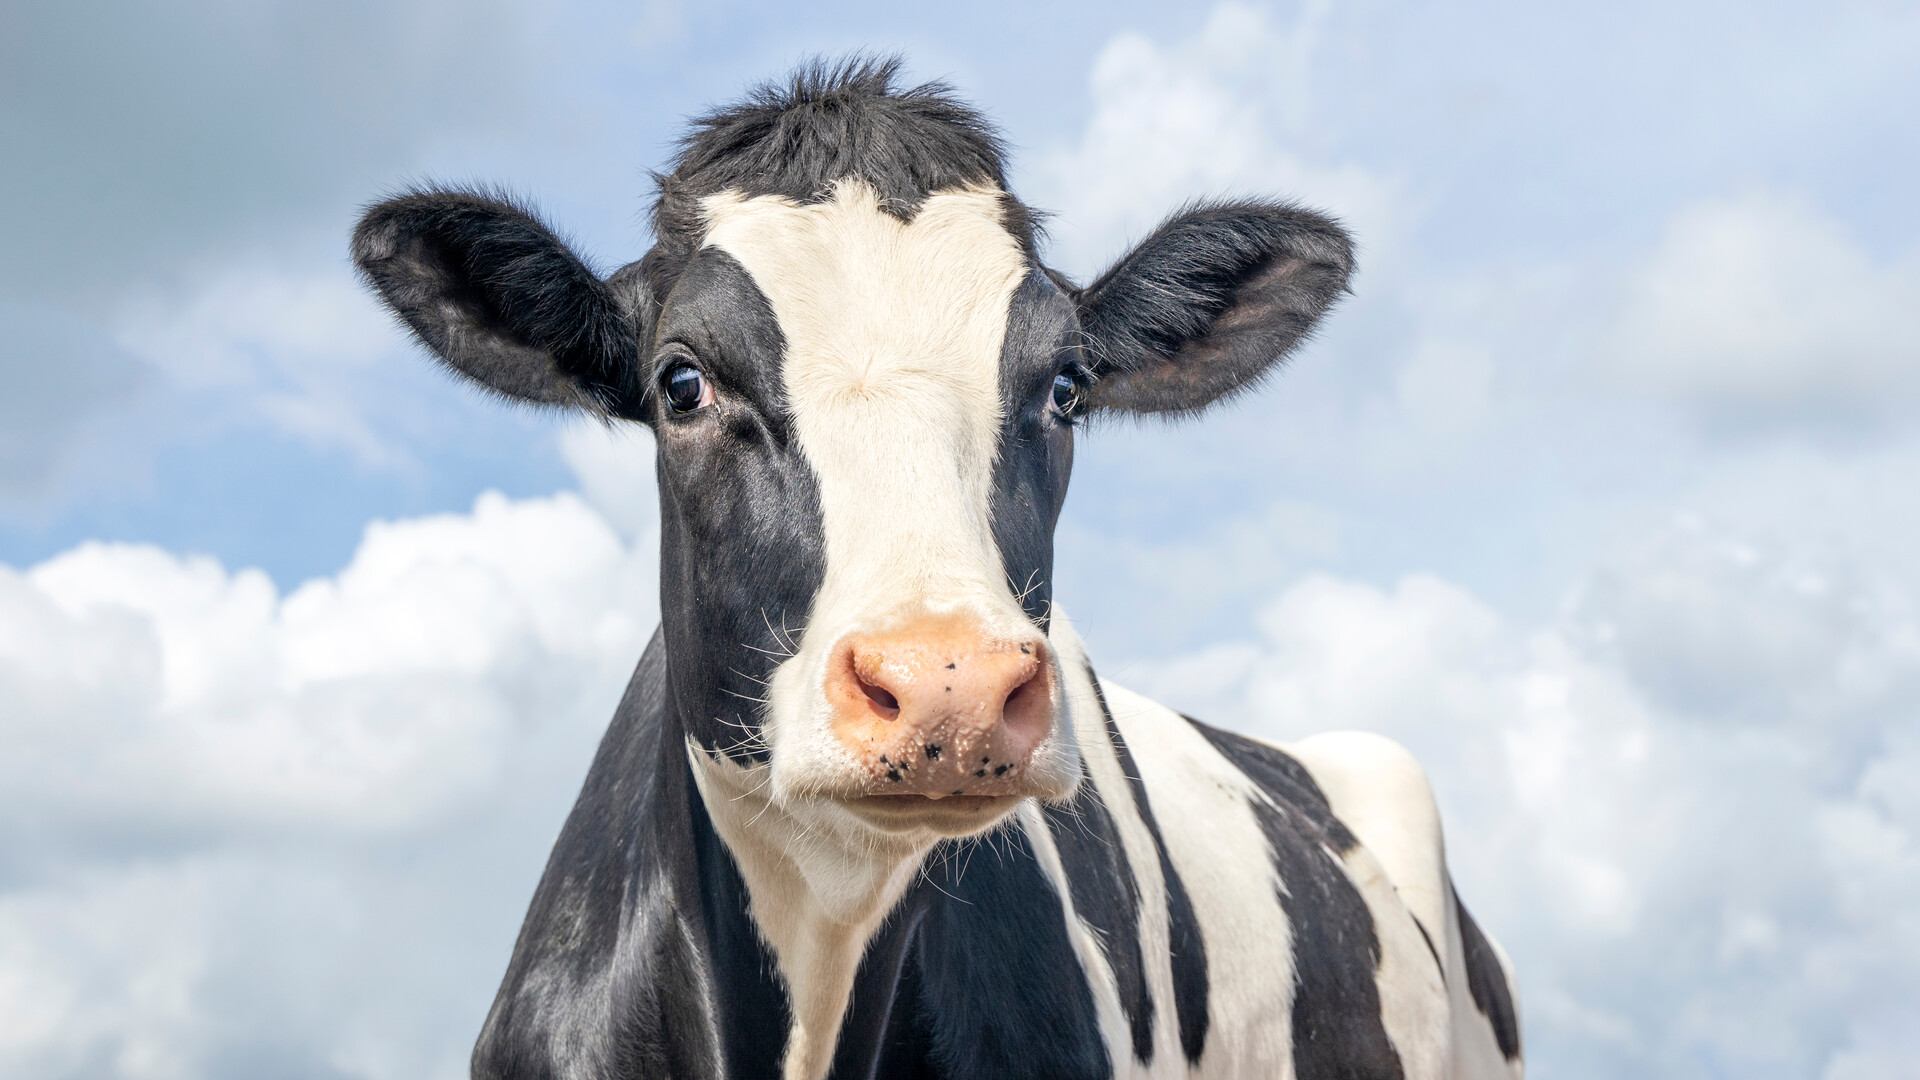 Holstein Hemp - The Next Big Market?